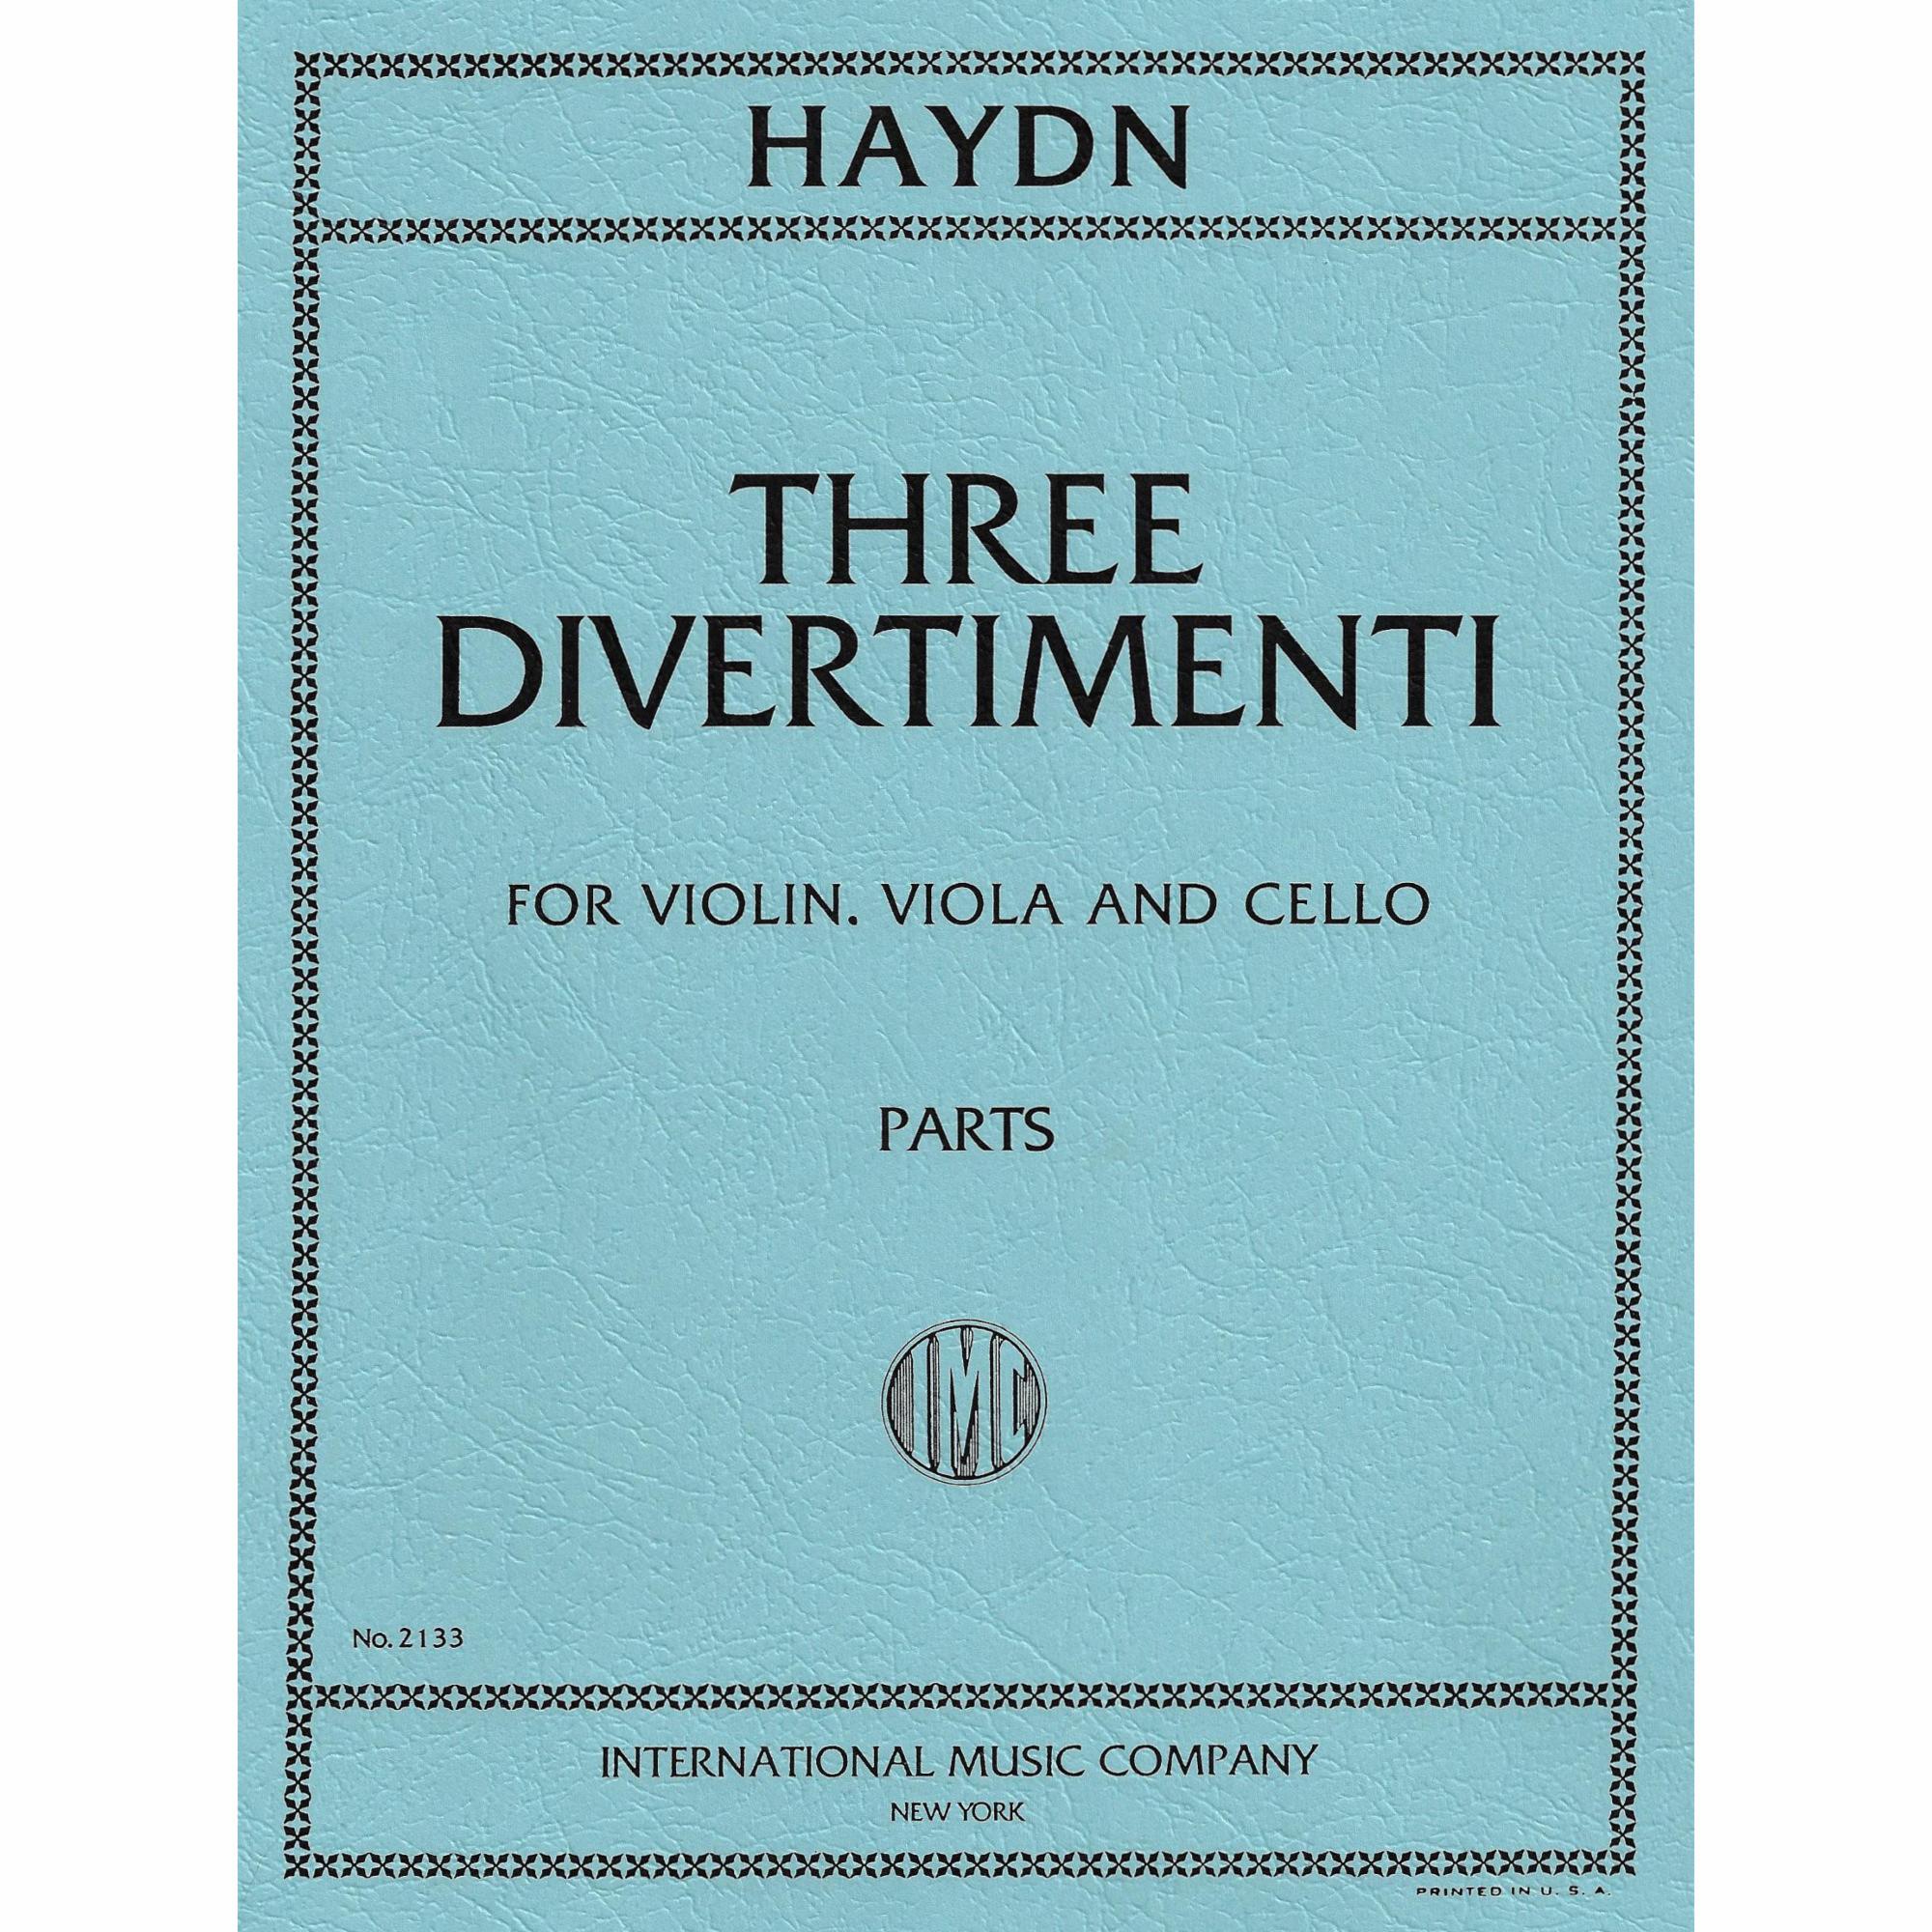 Haydn -- Three Divertimenti for Violin, Viola, and Cello